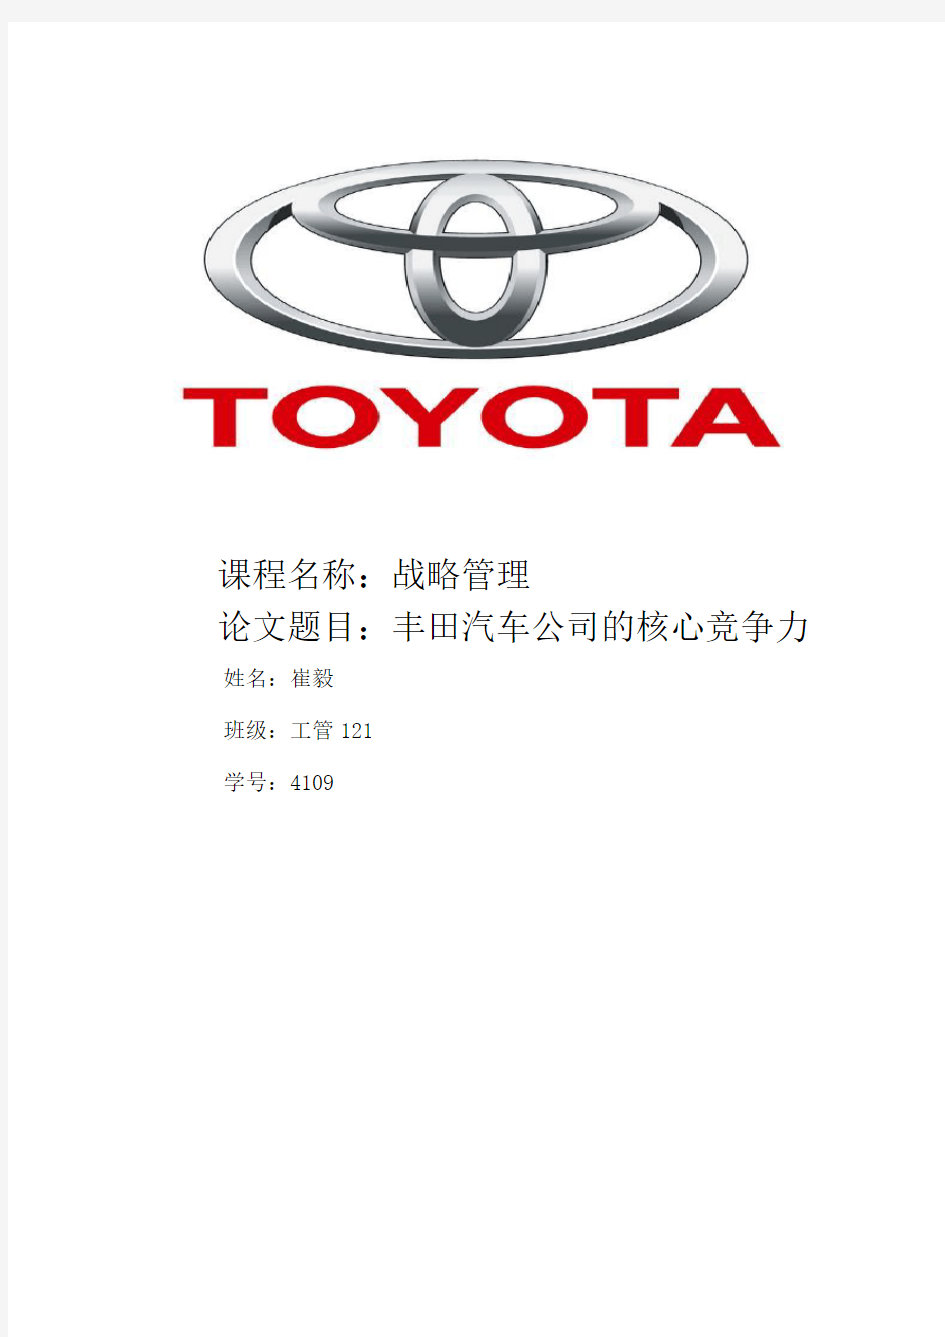 丰田汽车公司的核心竞争力